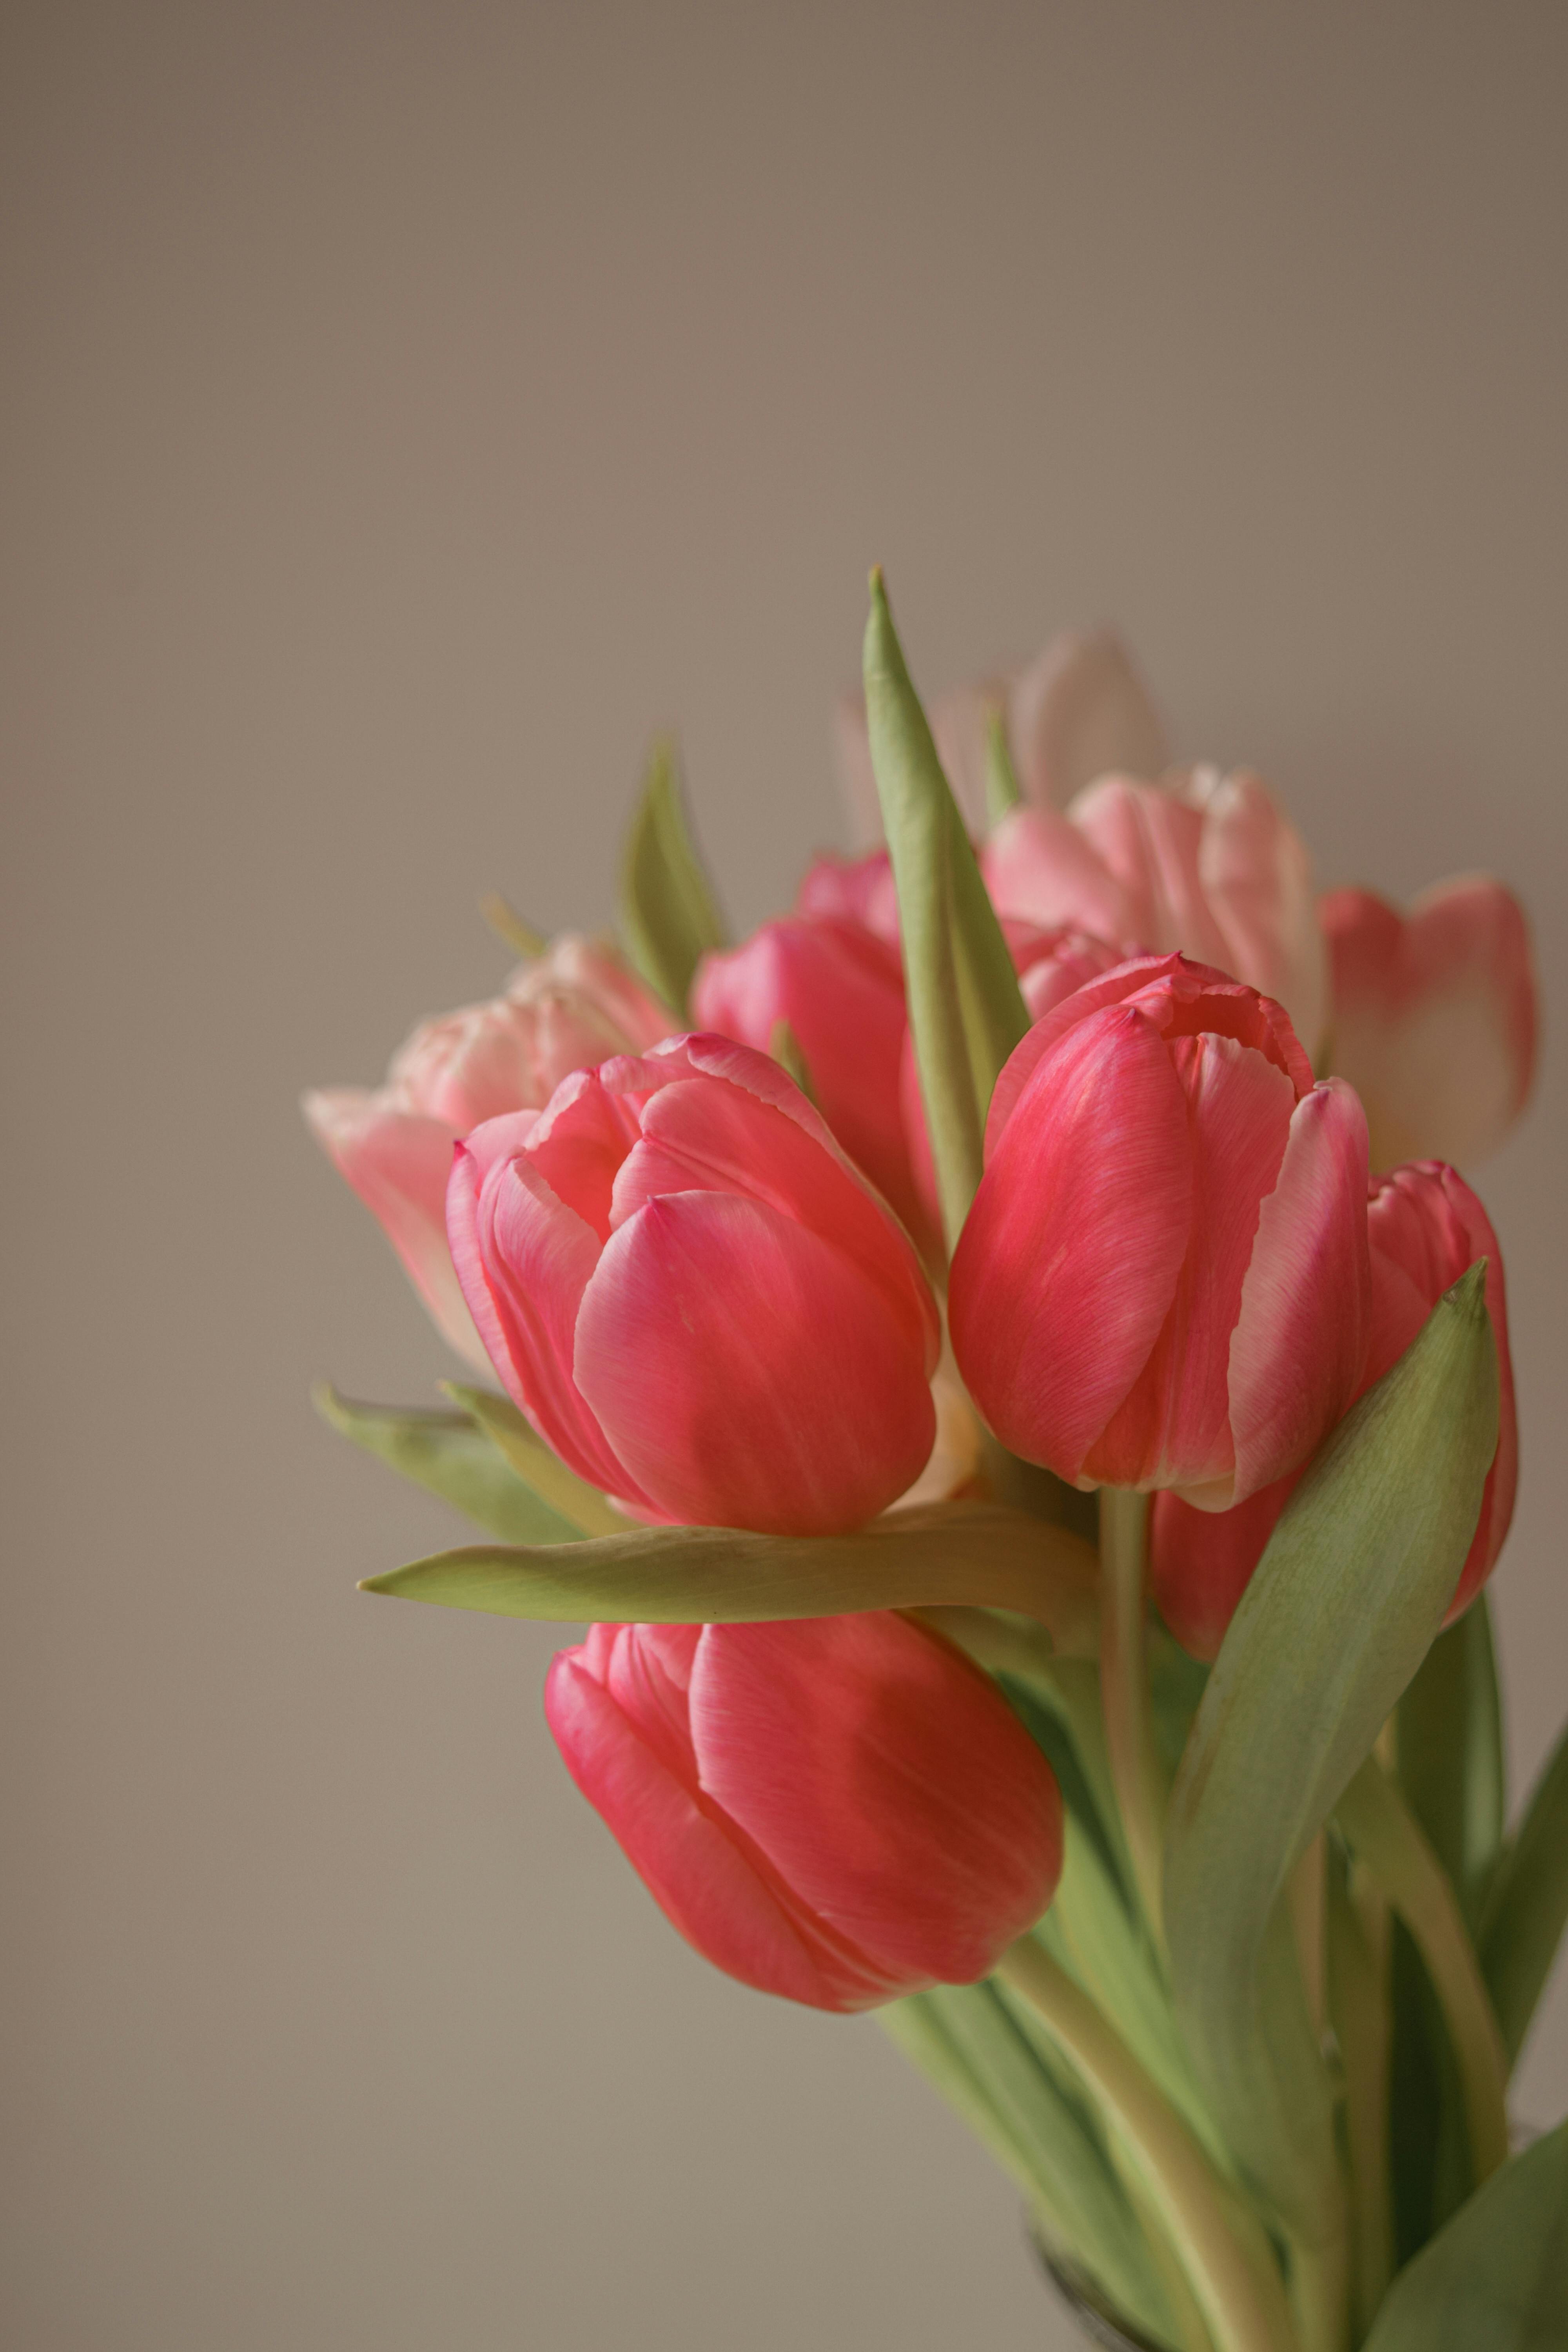 Nền Biển Hoa Tulip đỏ Buổi Chiều Công Viên Hoa Tulip Không Có ảnh Và Hình  ảnh Để Tải Về Miễn Phí  Pngtree